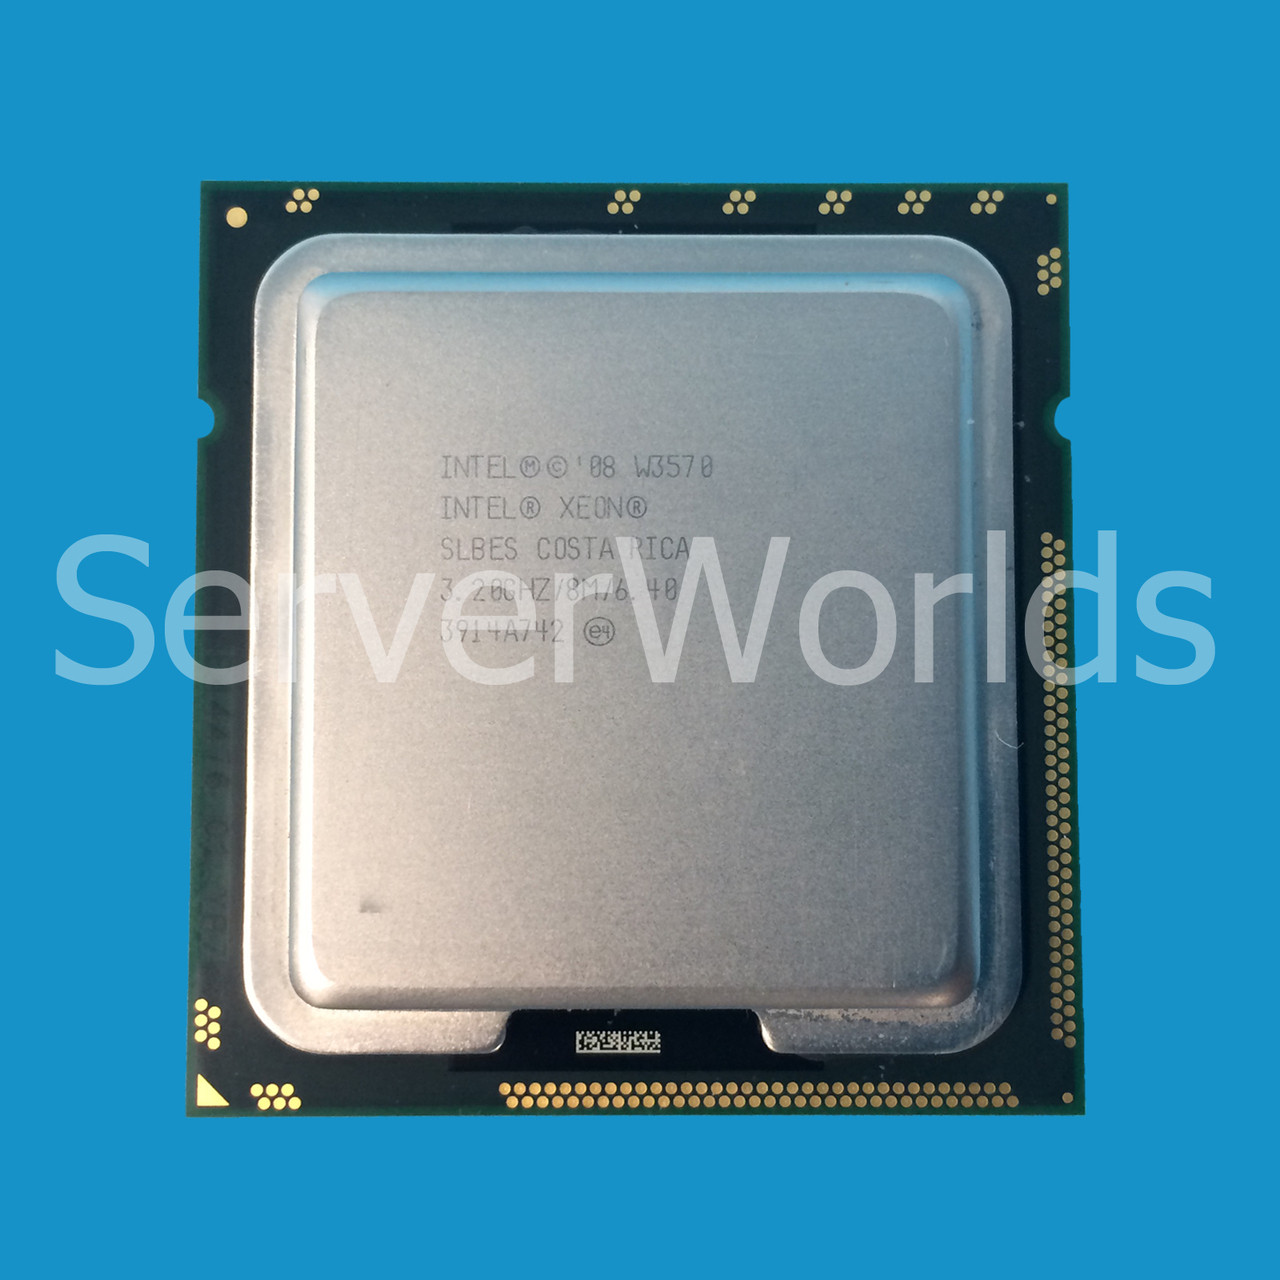 Wonder Teacher's day elite Intel SLBES | Intel QC Xeon W3570 3.20Ghz | - Serverworlds